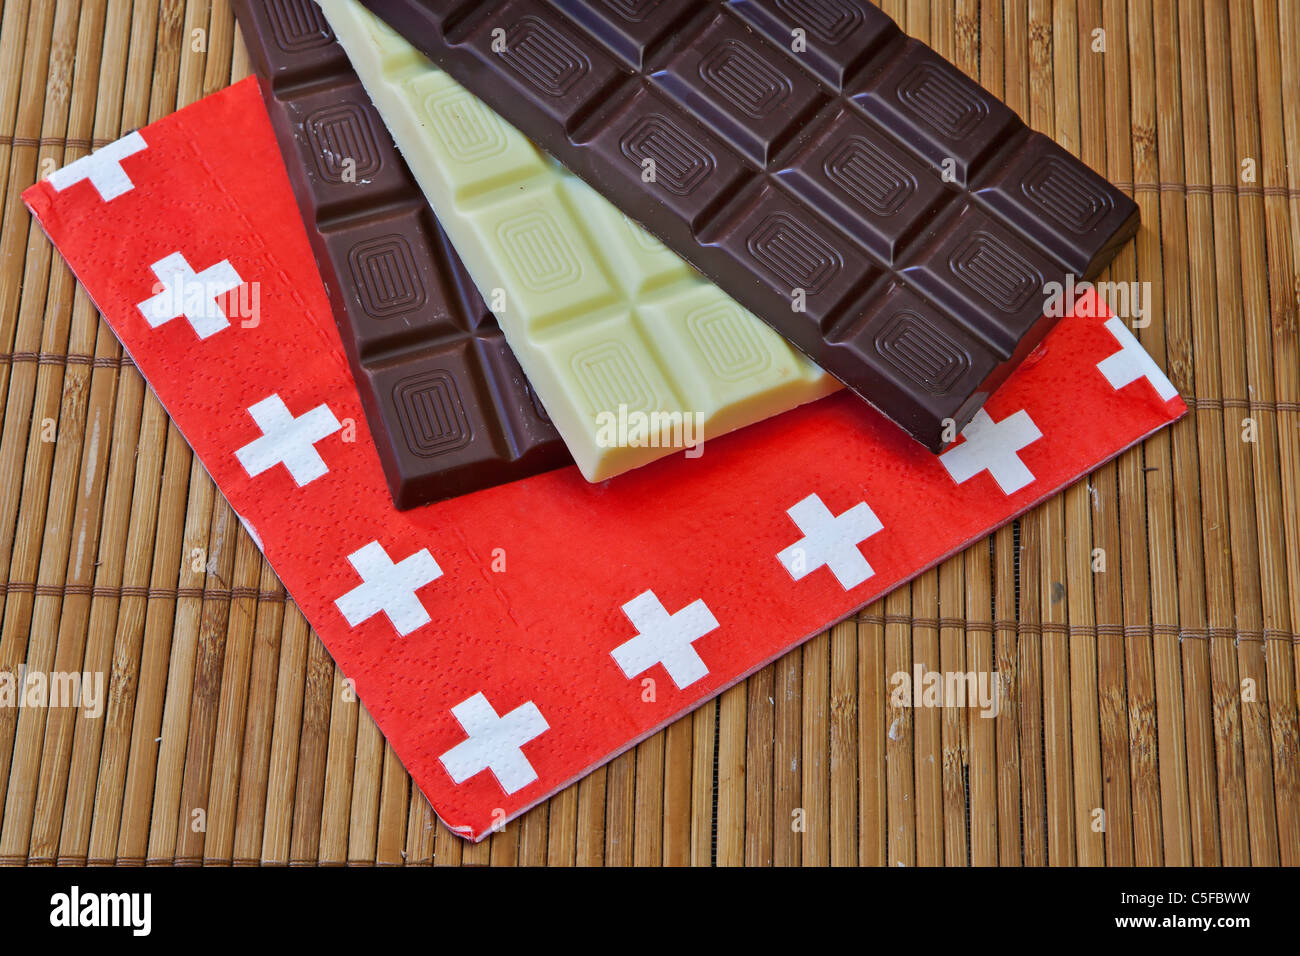 https://c8.alamy.com/compfr/c5fbww/trois-panneaux-chocolat-suisse-sur-un-set-de-table-avec-une-serviette-avec-drapeau-suisse-c5fbww.jpg